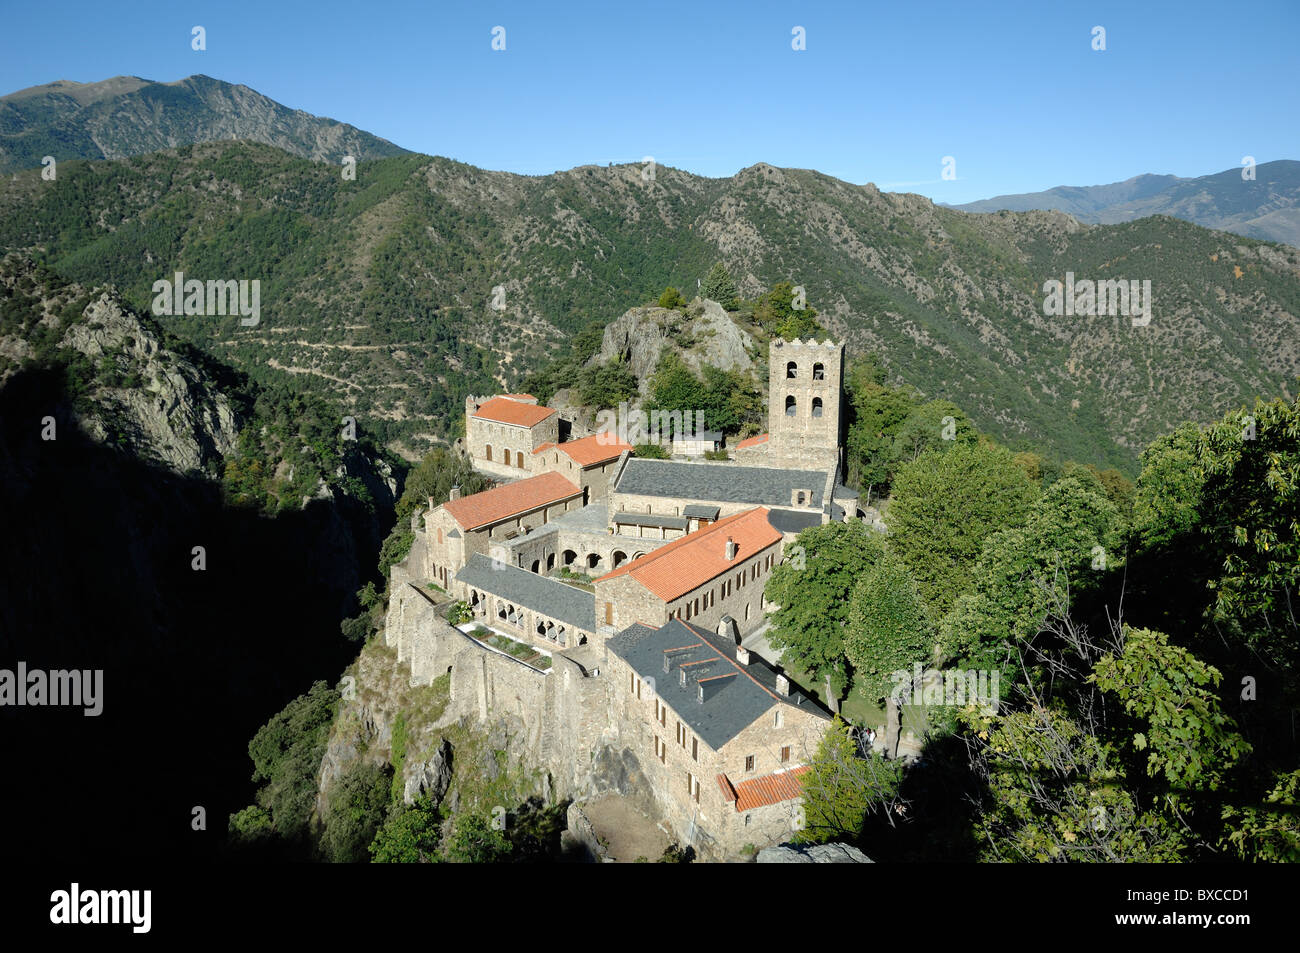 Luftansicht oder Hochwinkelansicht der Abtei Saint-Martin-de-Canigou oder des romanischen Klosters auf dem Canigou-Berg, den Pyrenäen, Pyrénées-Orientales Frankreich Stockfoto